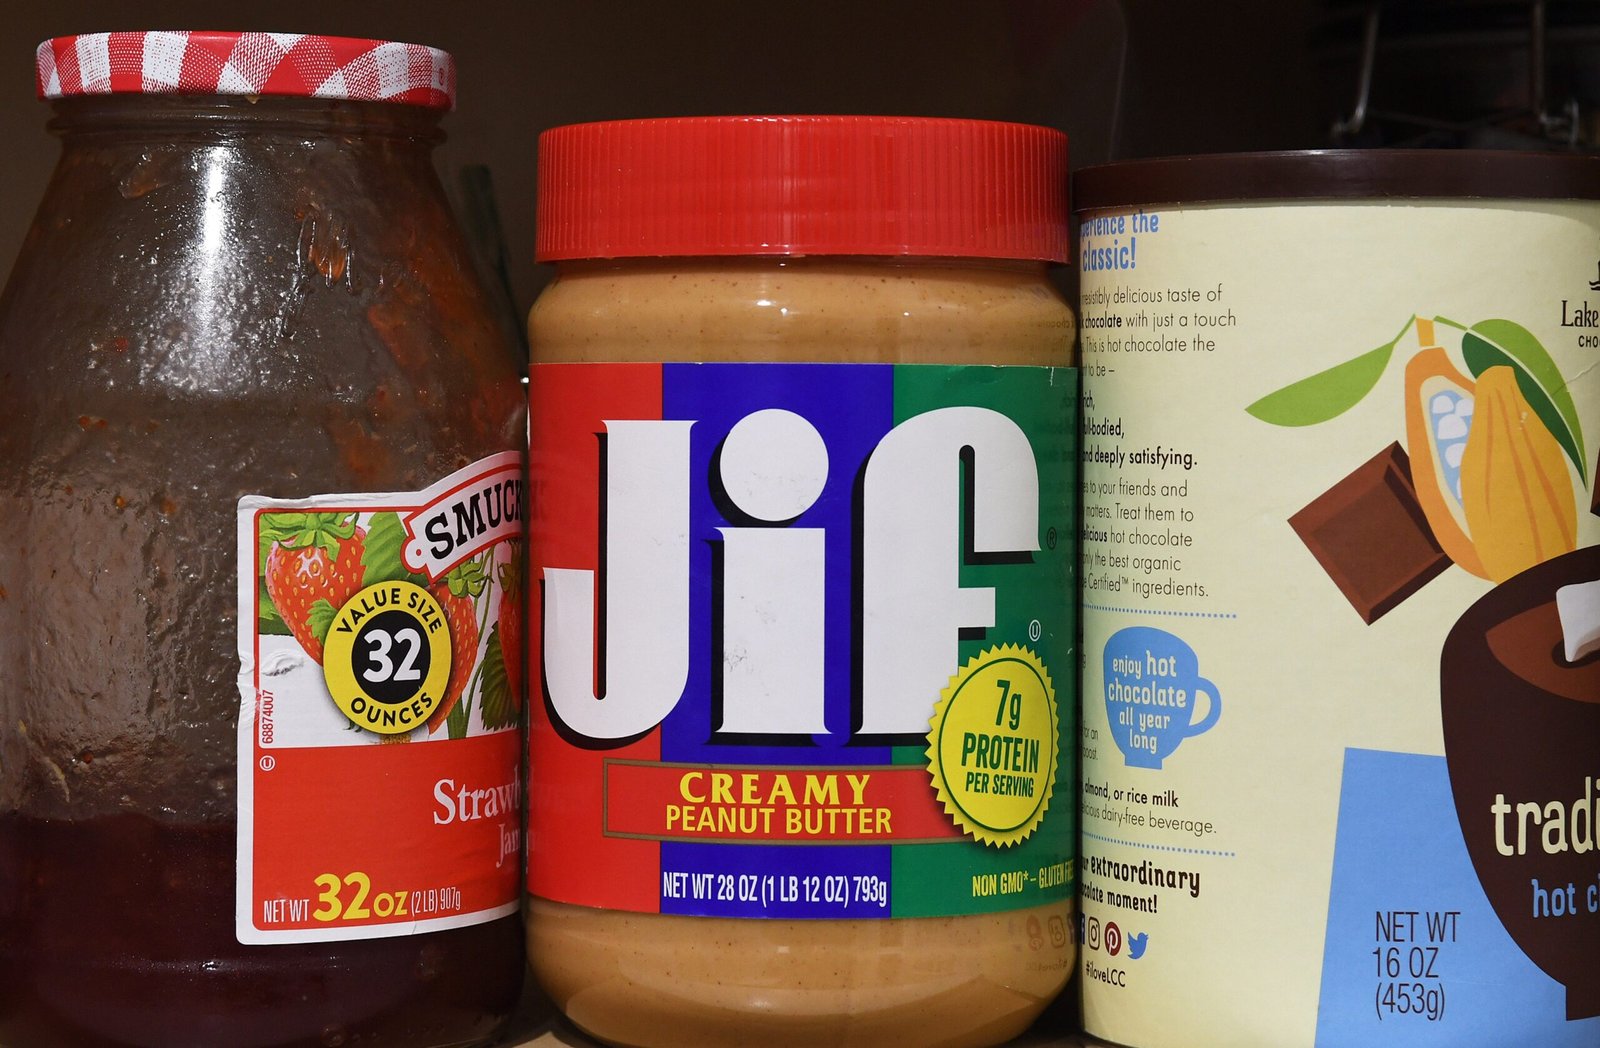 Jif Peanut Butter Merchandise Recalled Following Salmonella Outbreak